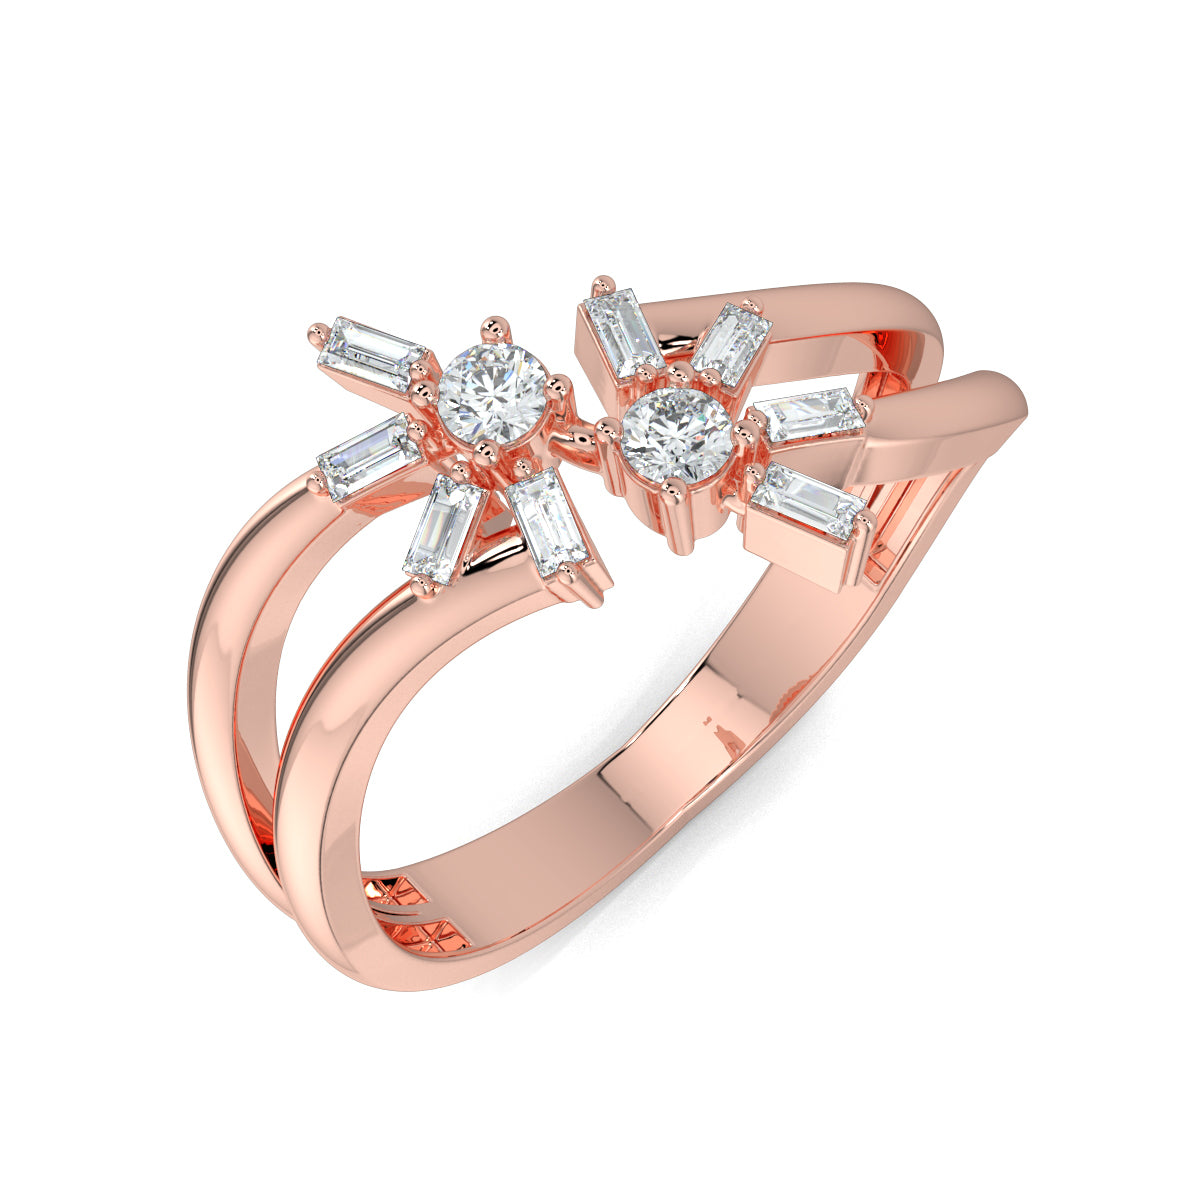 Rose Gold, Diamond Ring, Natura diamond ring, Lab-grown diamond ring, Mystic Flourish Diamond Ring, everyday diamond ring, split shank diamond ring, floral diamond ring, sustainable diamond jewelry, round diamond, baguette diamond, elegant diamond ring, enchanting diamond ring